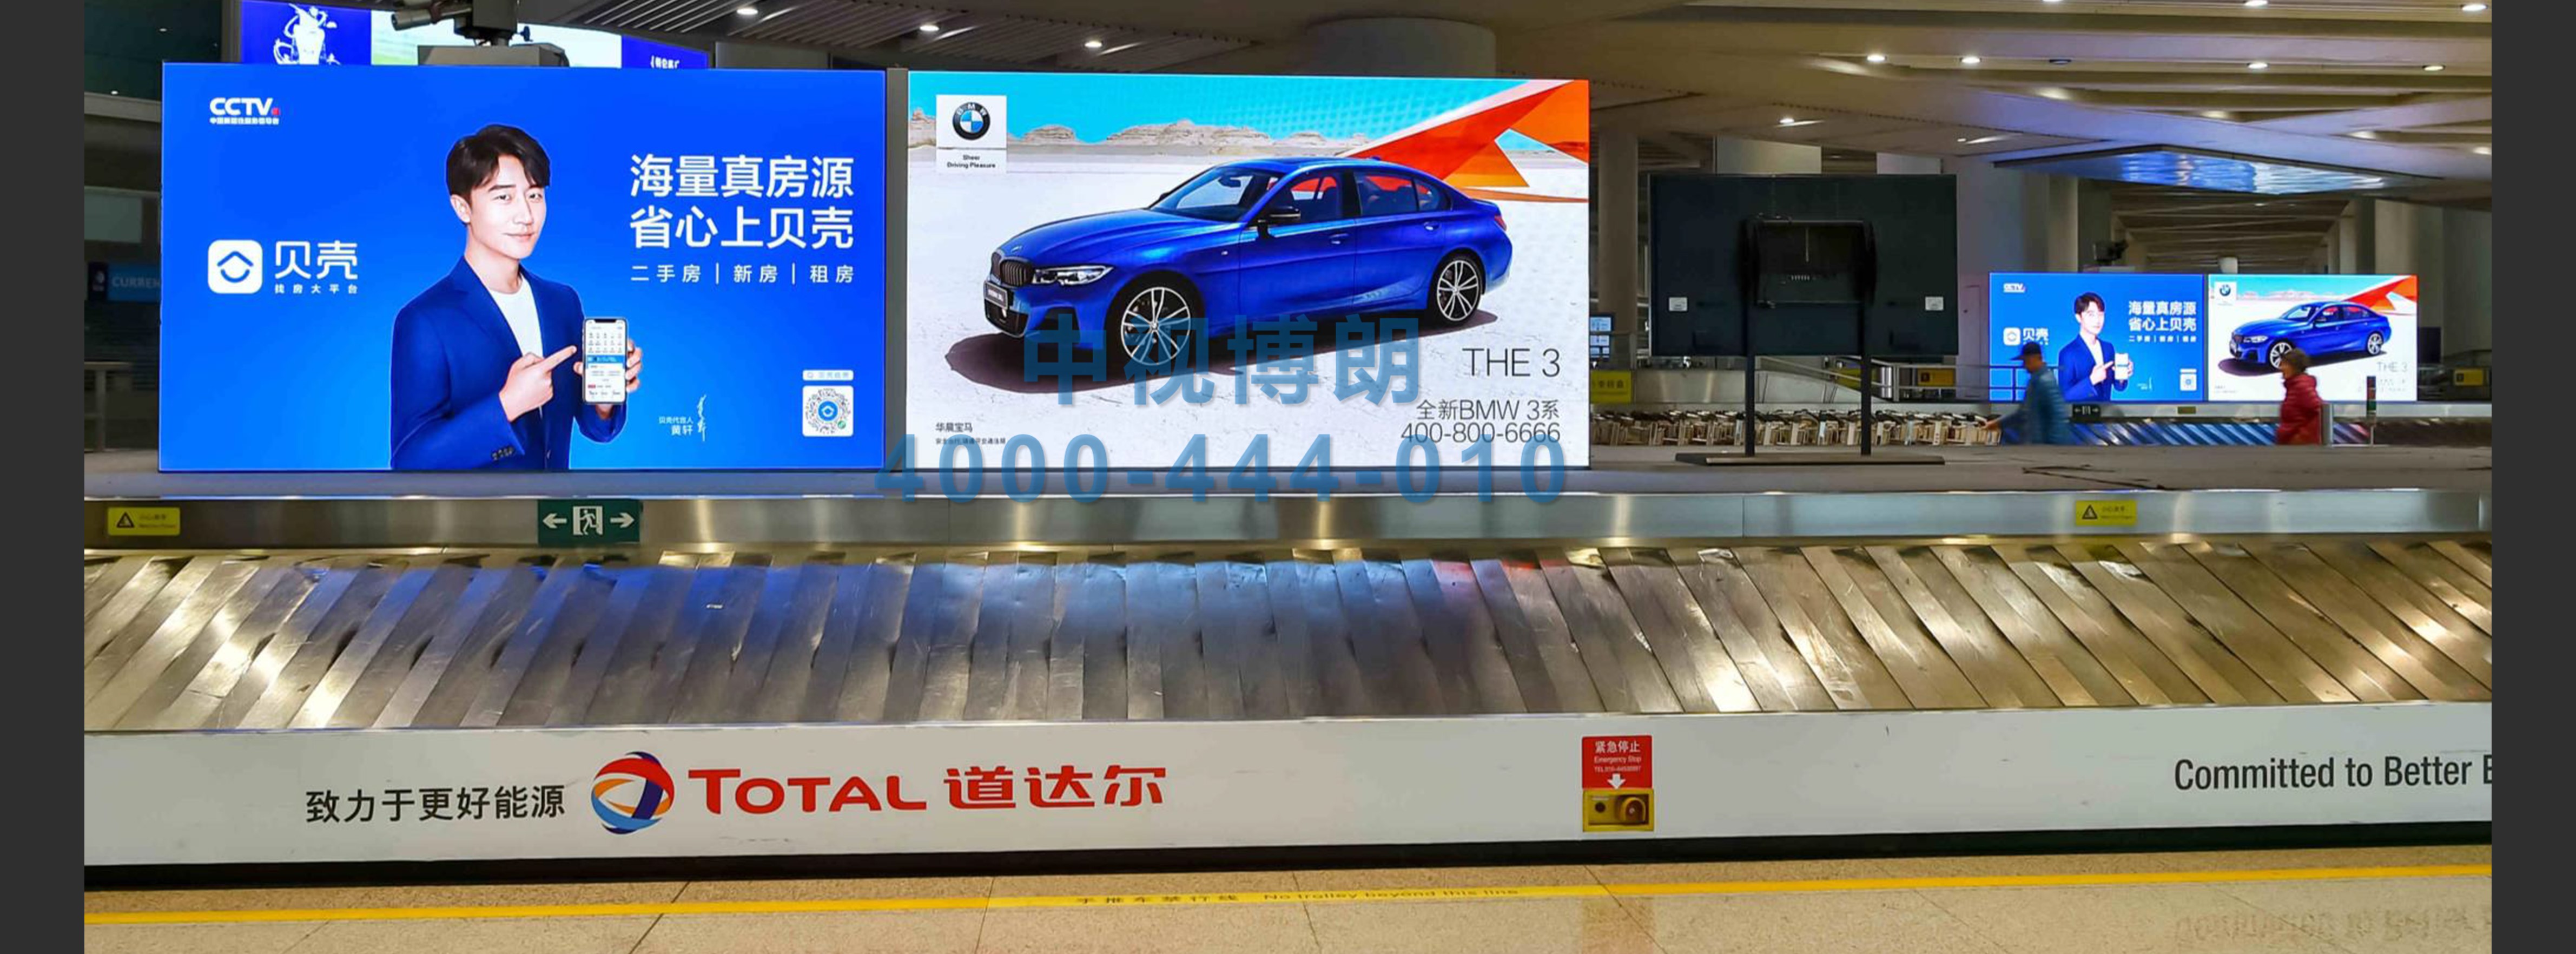 北京首都机场广告-国内国际到达行李厅52台刷屏